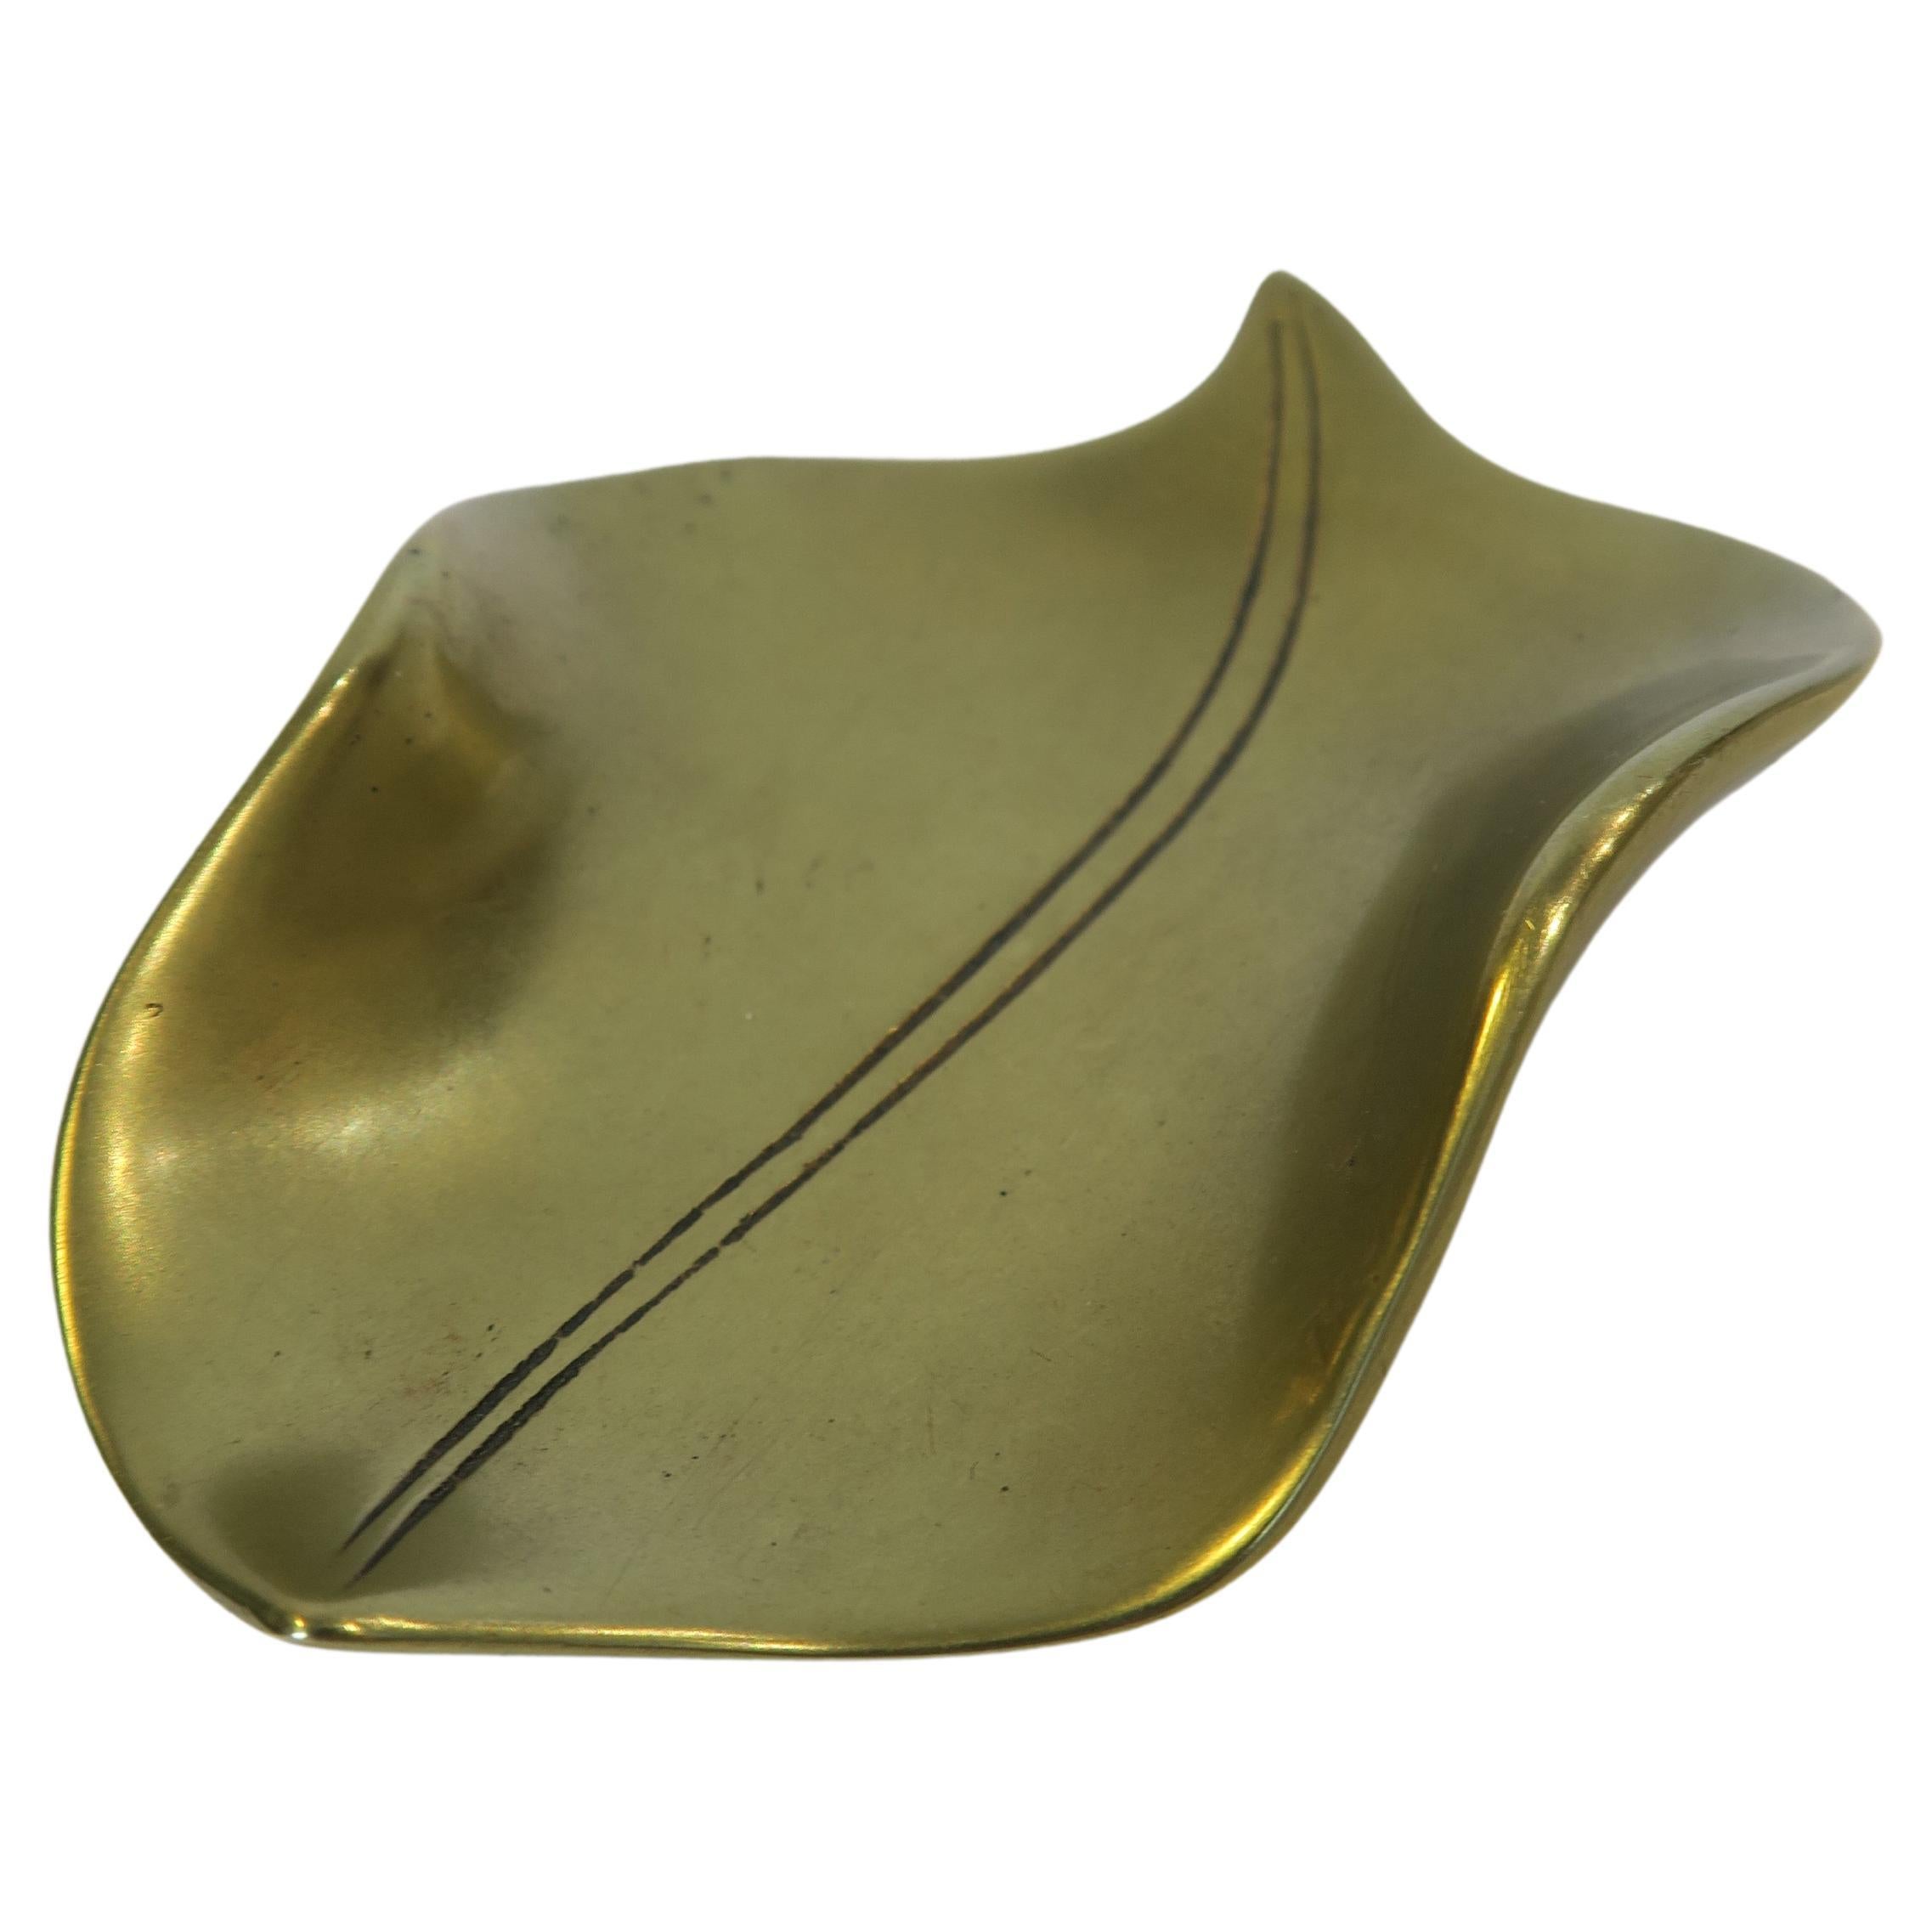 Original Carl Auböck Decorative Brass Dish in the Shape of a Leaf (Plat décoratif en laiton en forme de feuille)